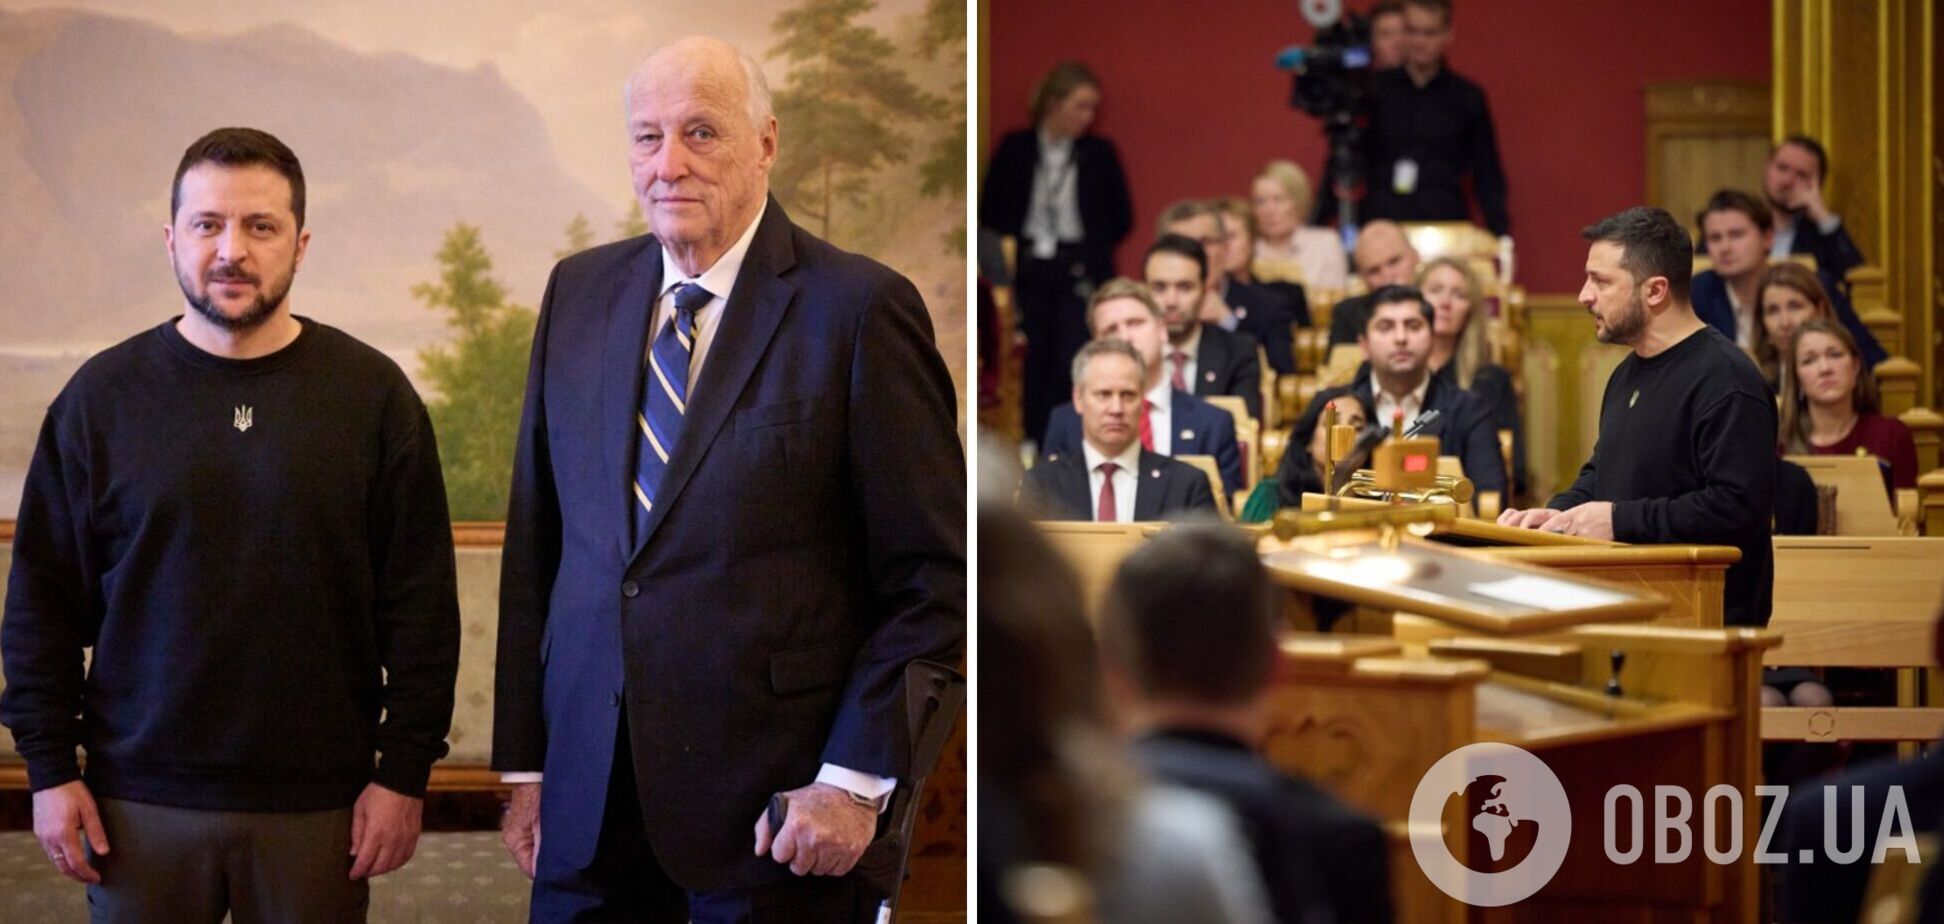 Зеленский поблагодарил короля Норвегии за поддержку Украины и обсудил потребности ВСУ с норвежскими политиками и бизнесменами. Фото и видео